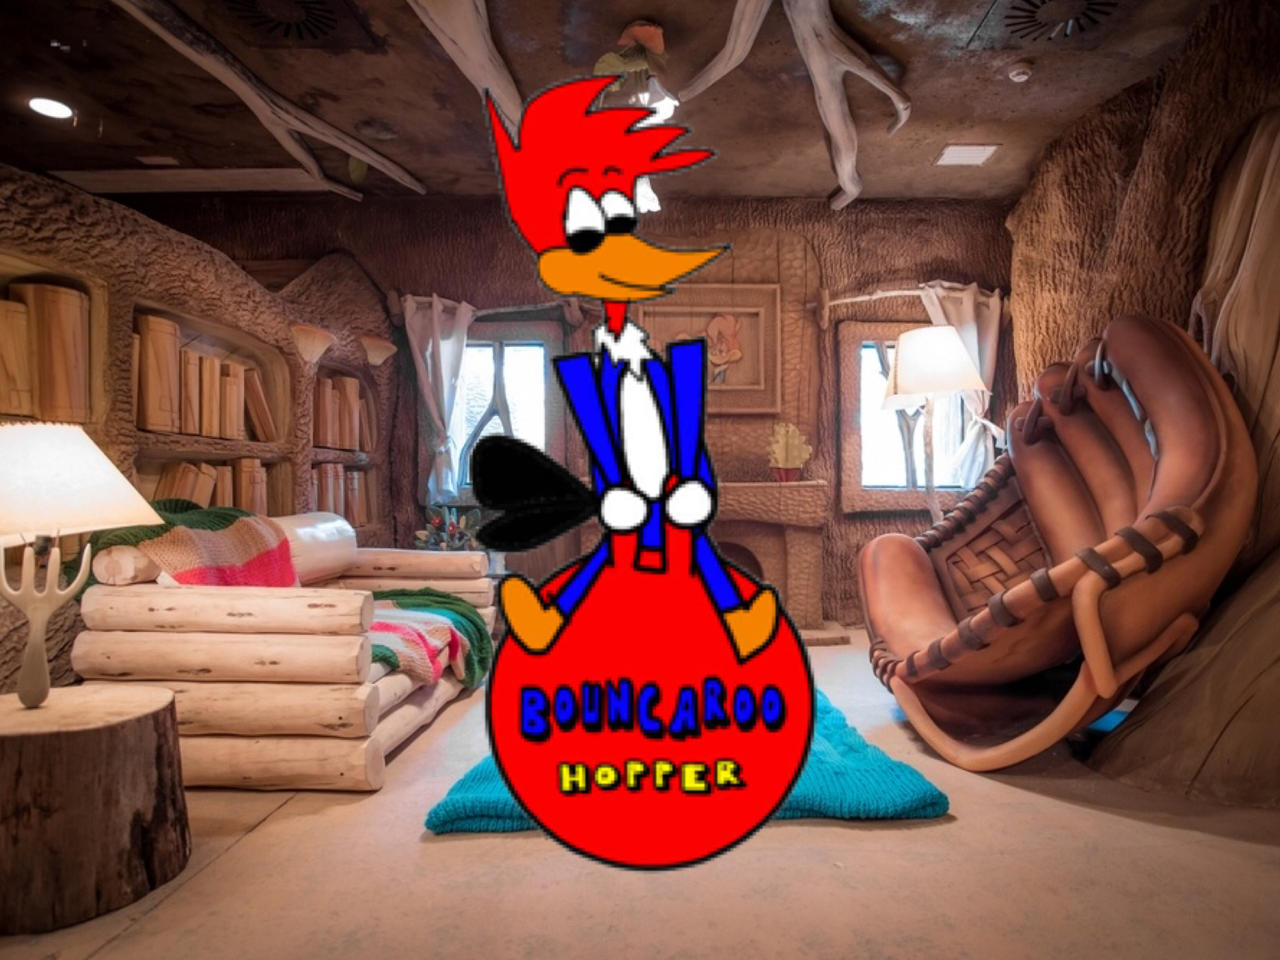 Woody sitpopping a bounce-a-roo hopper by Mr-Deviantarter DeviantArt